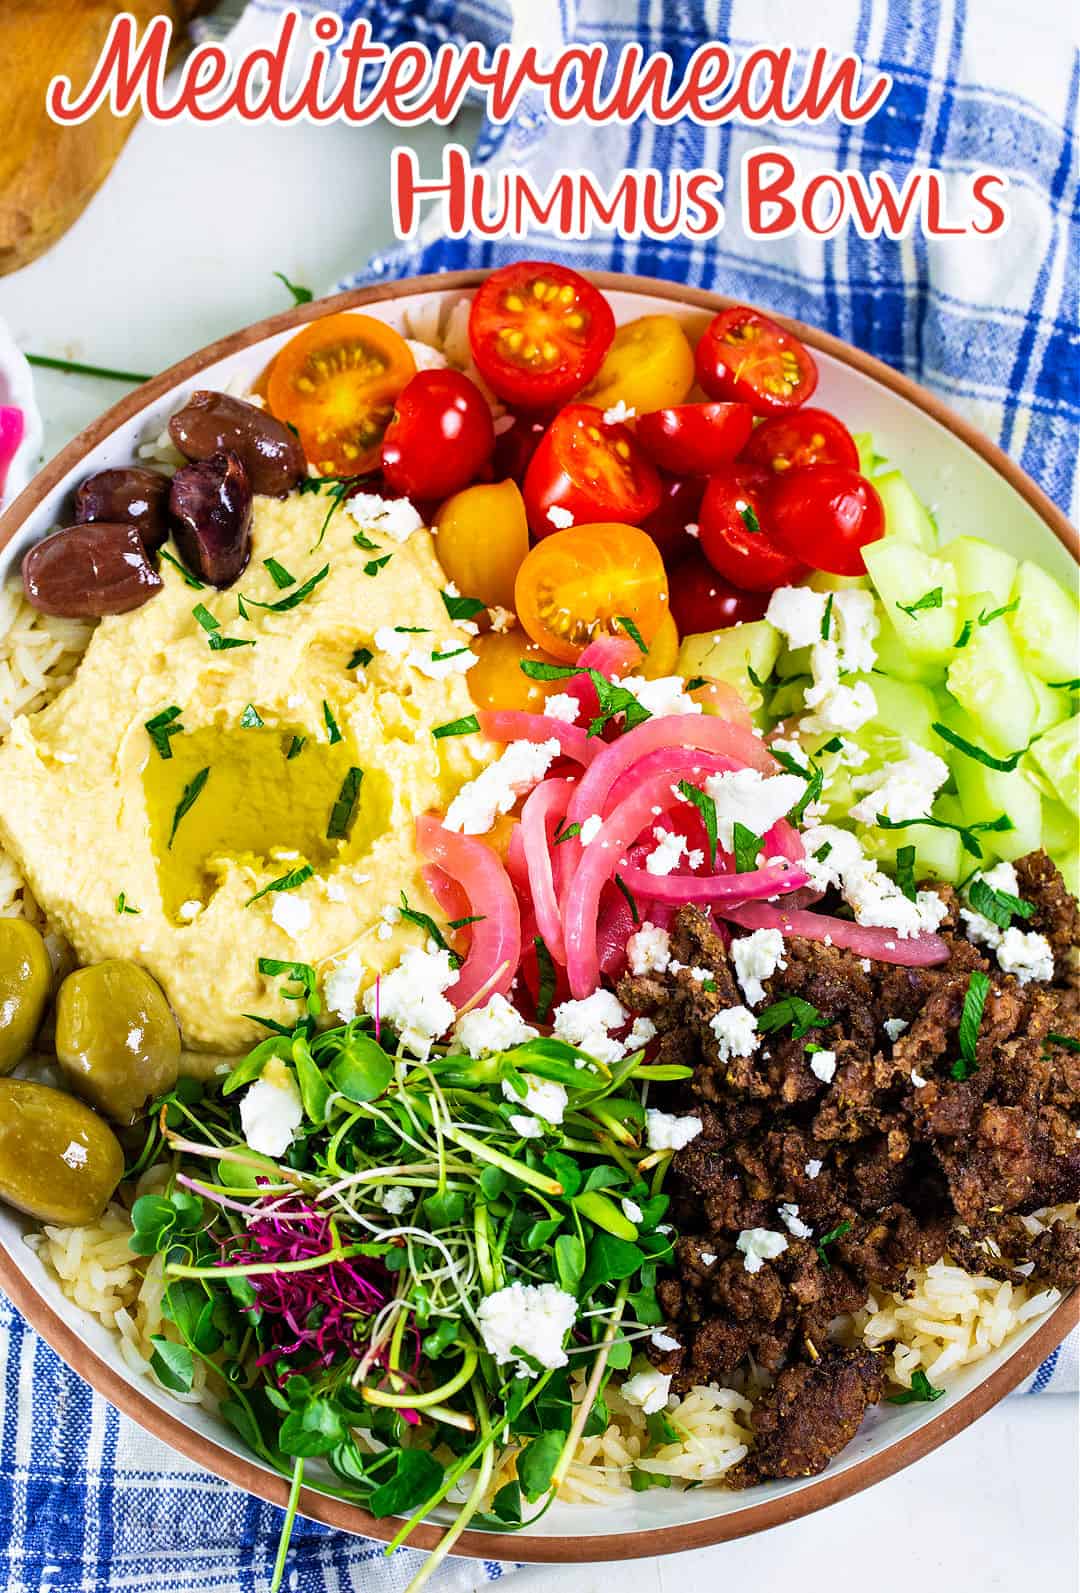 Mediterranean Hummus Bowls with Ground Beef over rice.